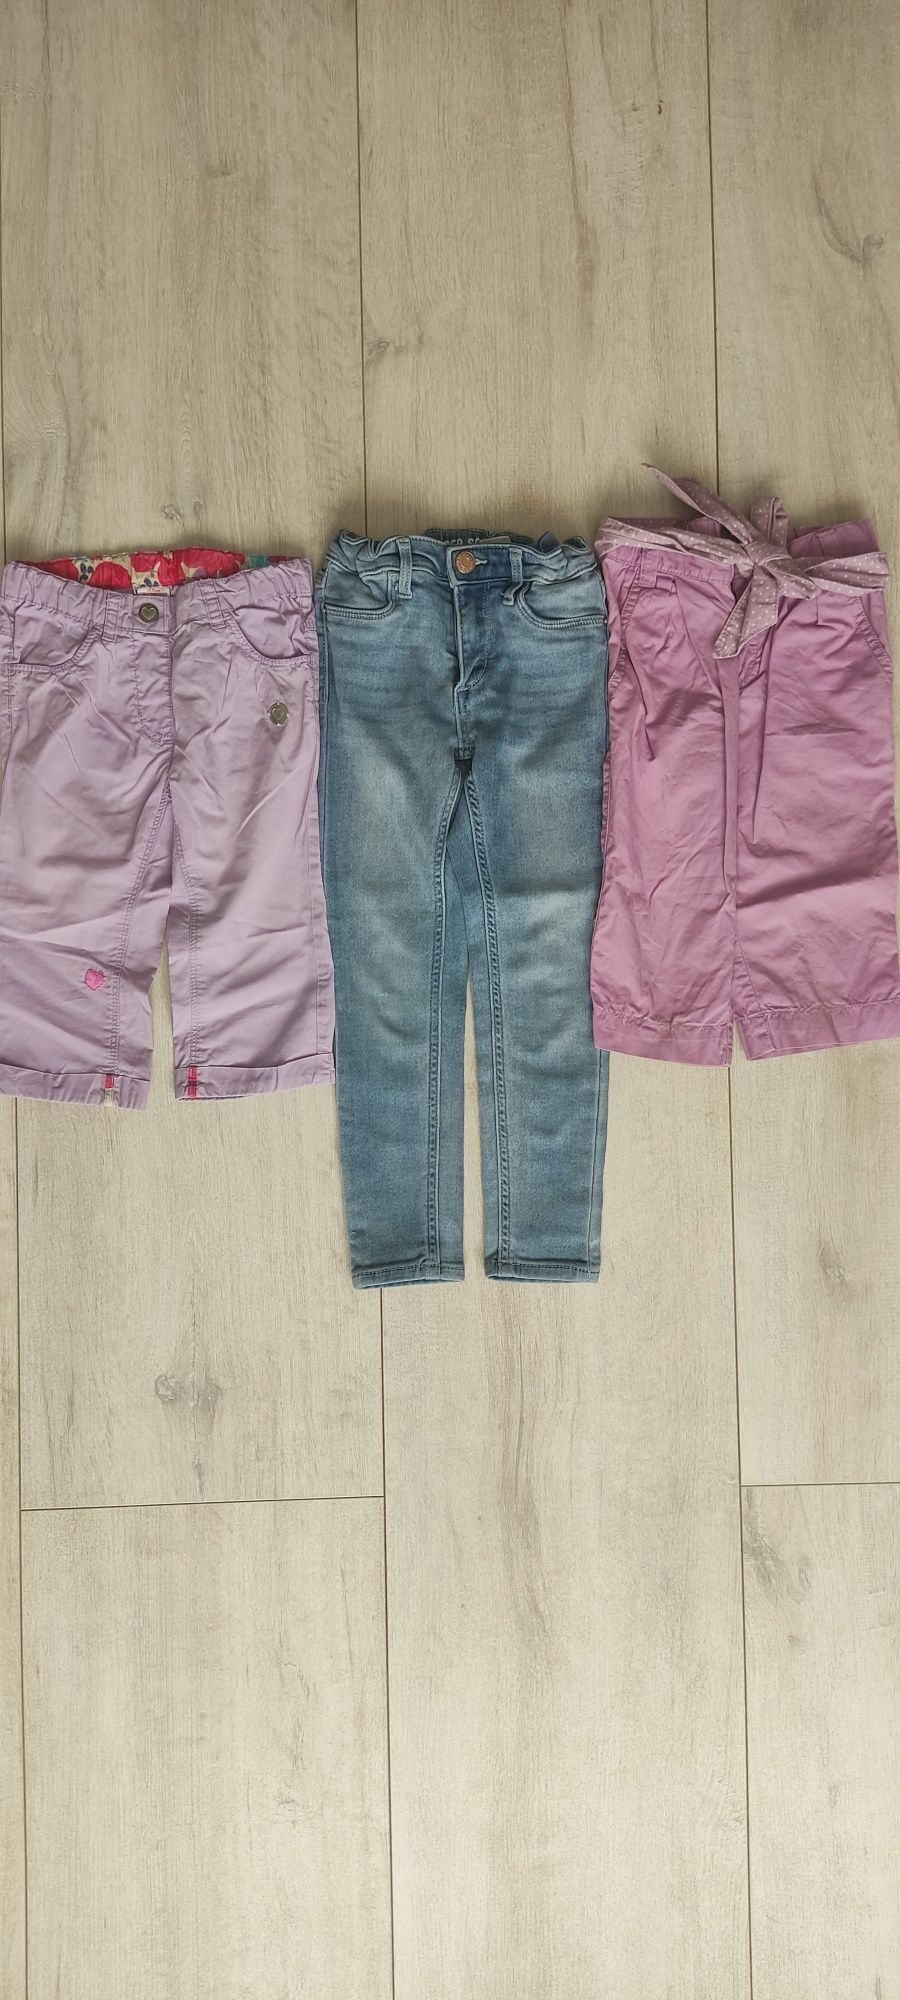 Zestaw spodni dziewczęcych 92/98/104/110 jeansy/HM/Zara/S.Oliver/Next